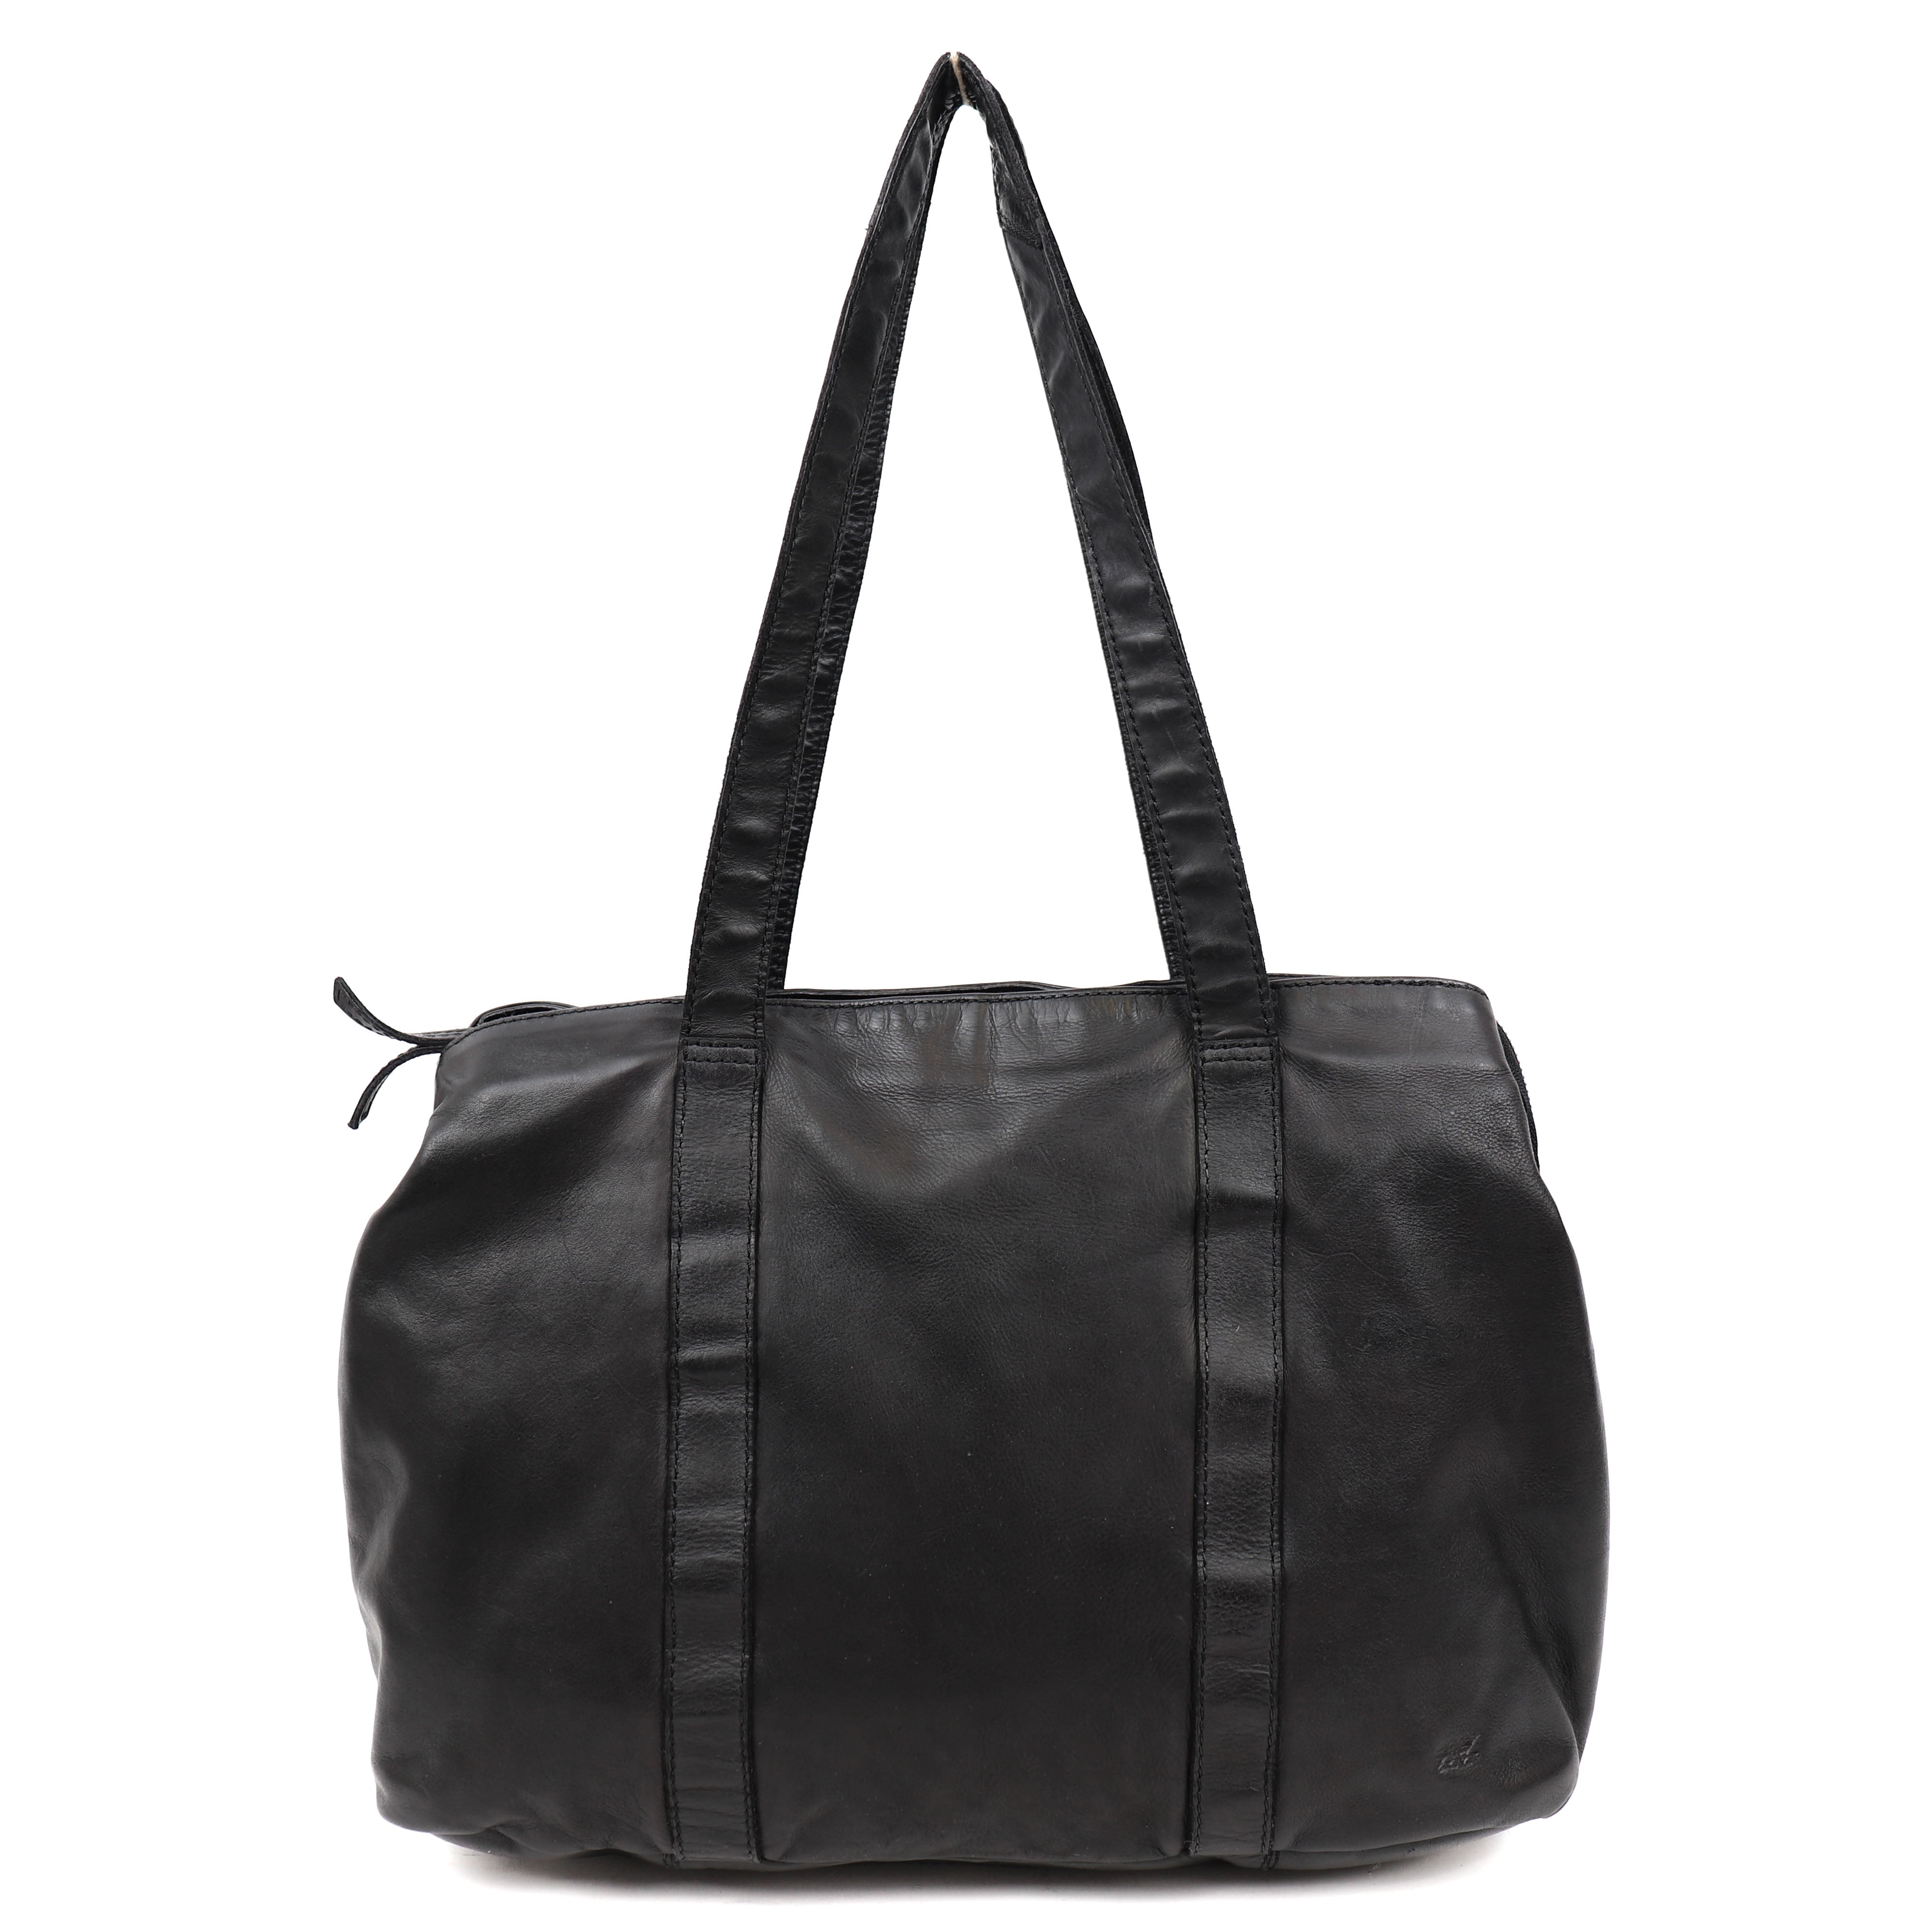 Hand/shoulder bag 'Bente' black